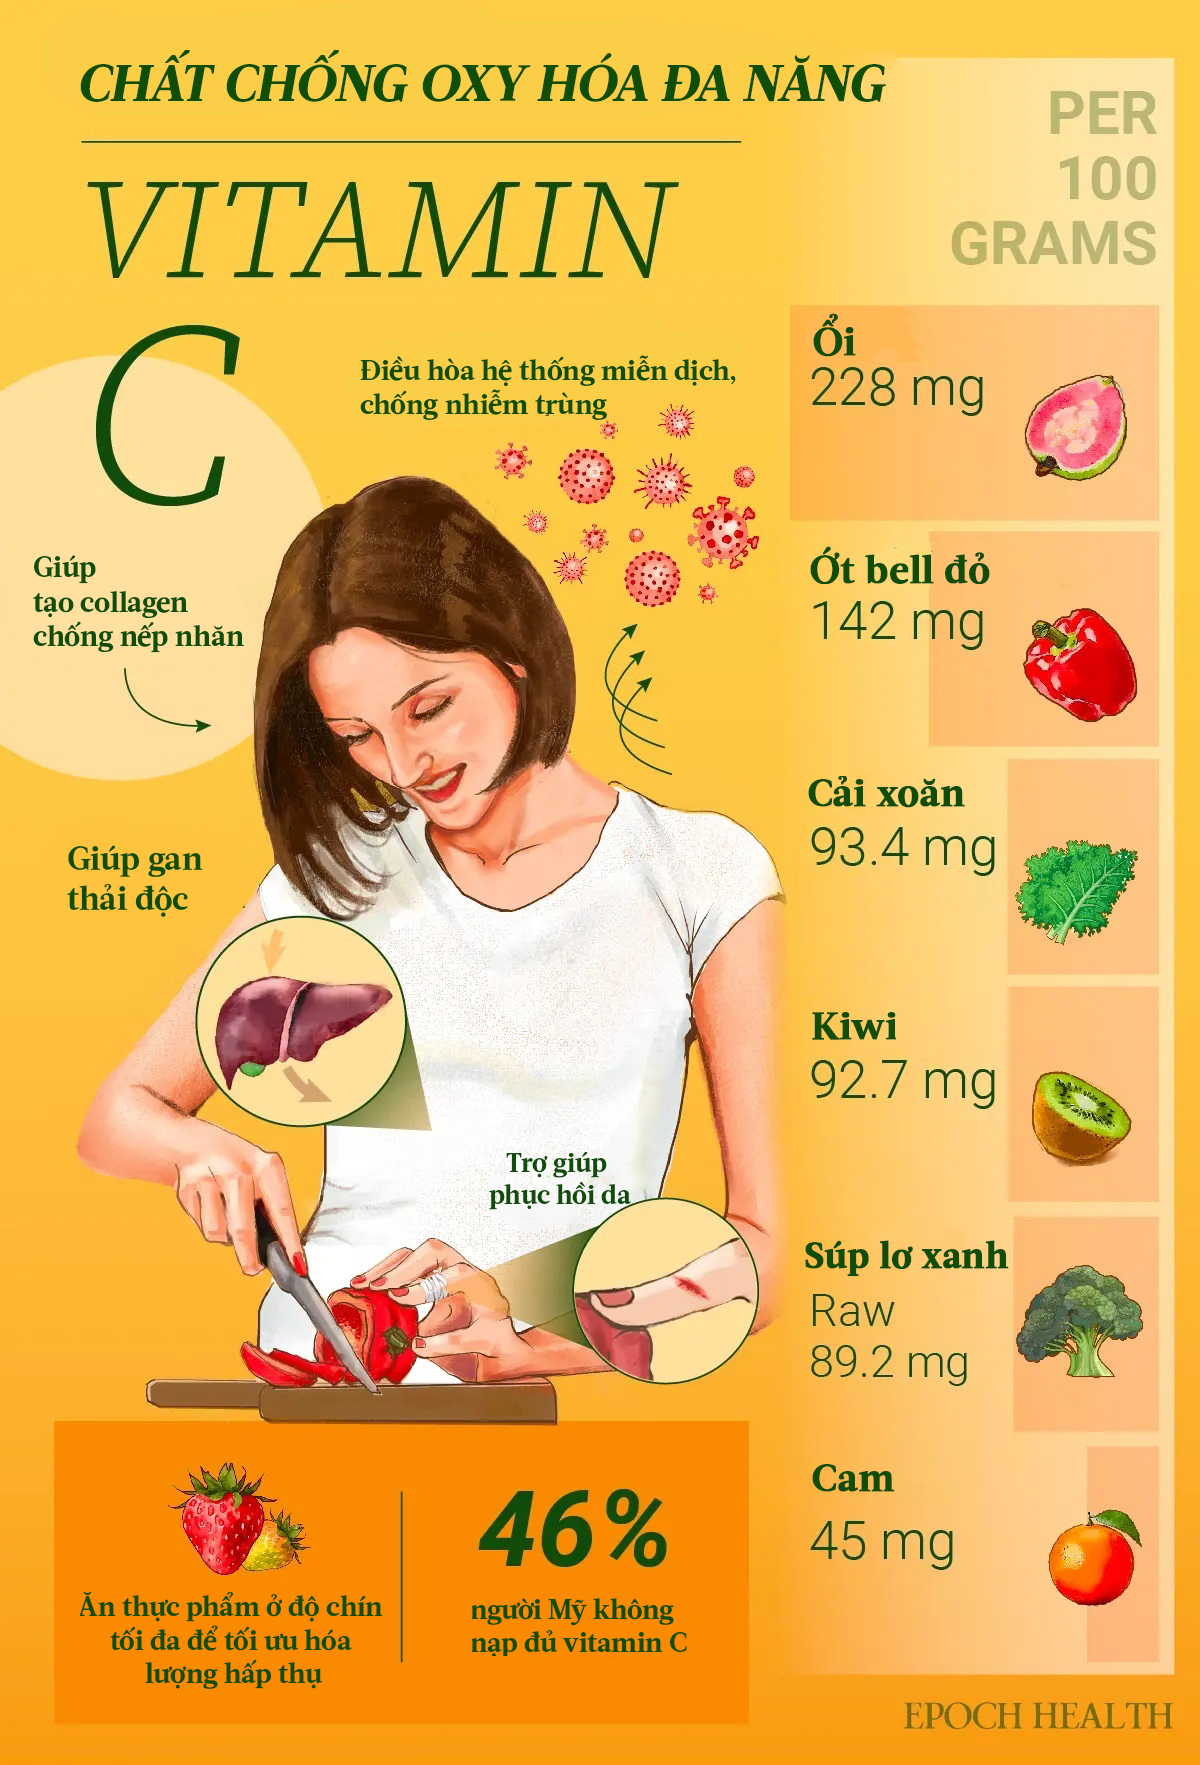 Vitamin C: Giúp chữa lành vết thương và tăng khả năng miễn dịch, gần một nửa người Mỹ không hấp thu đủ vitamin C